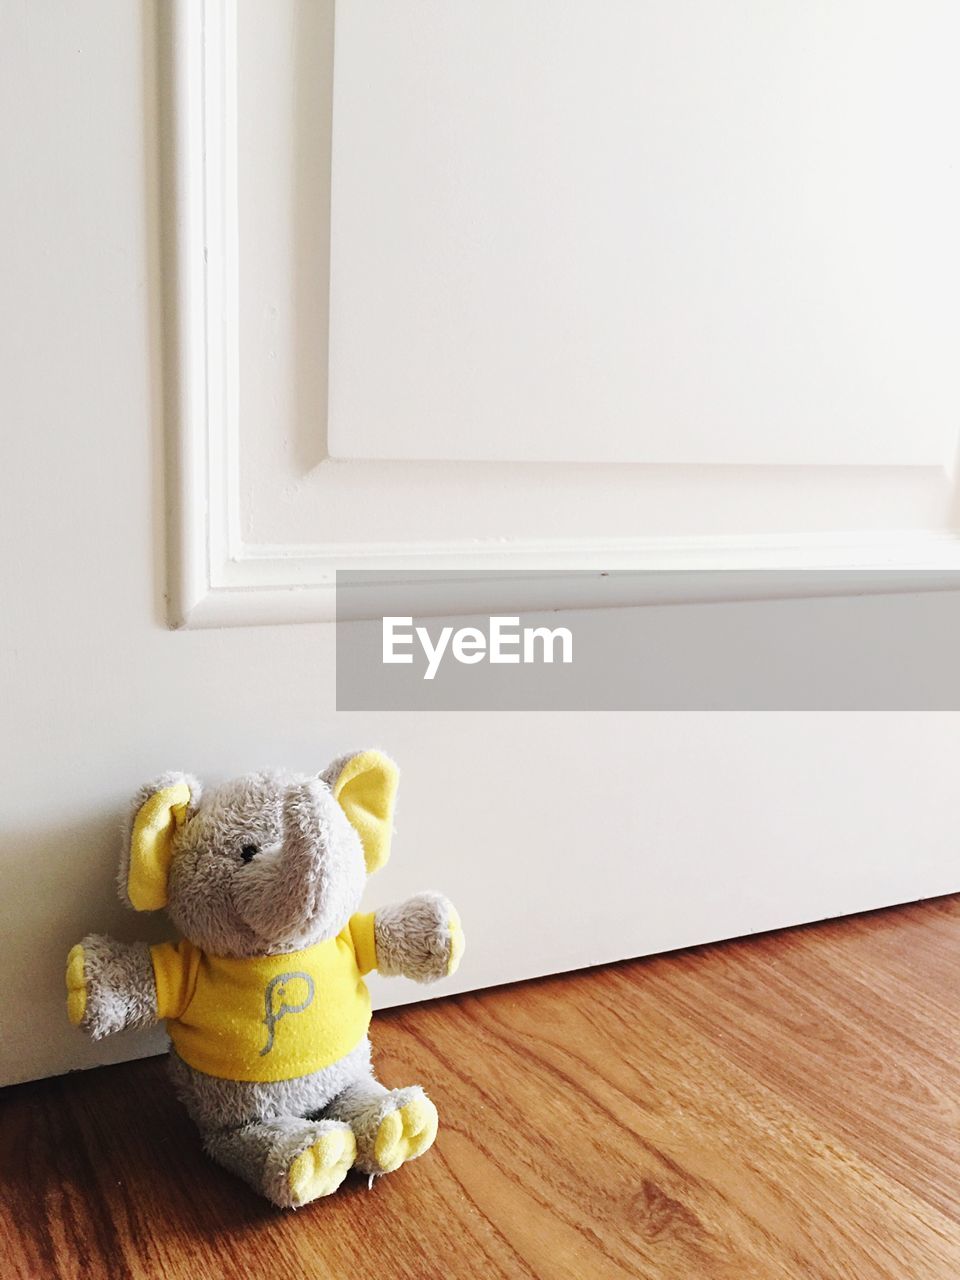 Elephant toy on hardwood floor against door